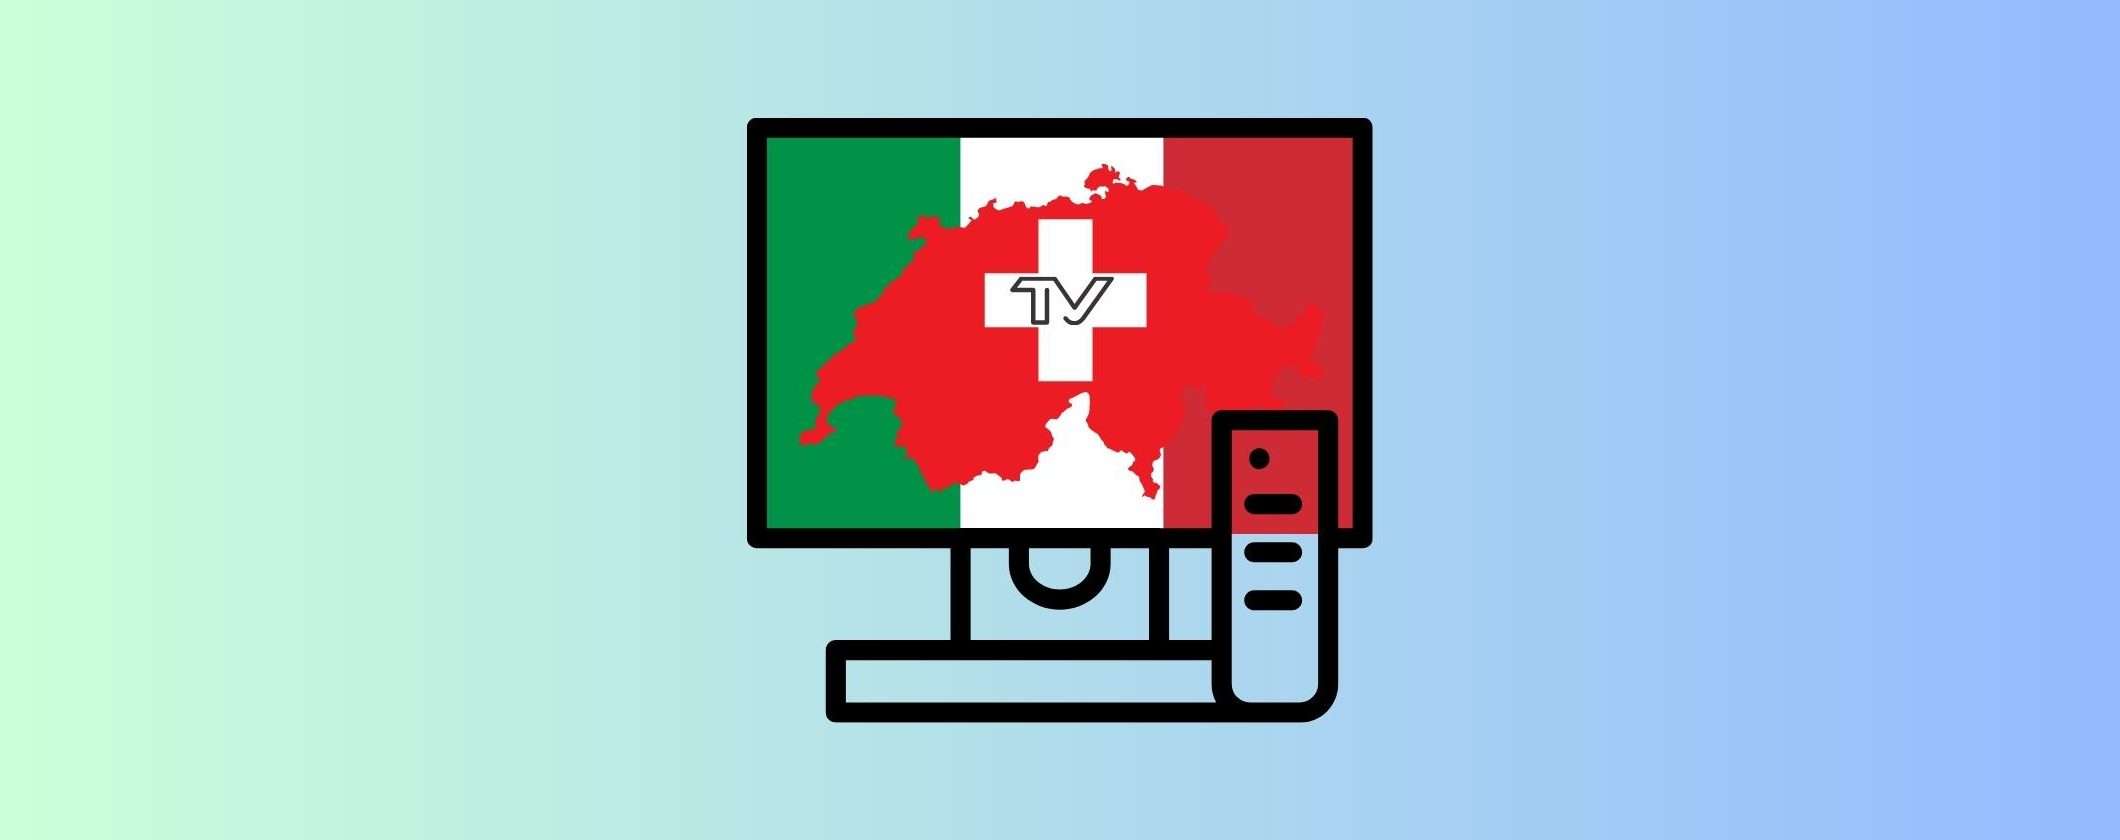 Come e perché vedere la TV Svizzera dall'Italia